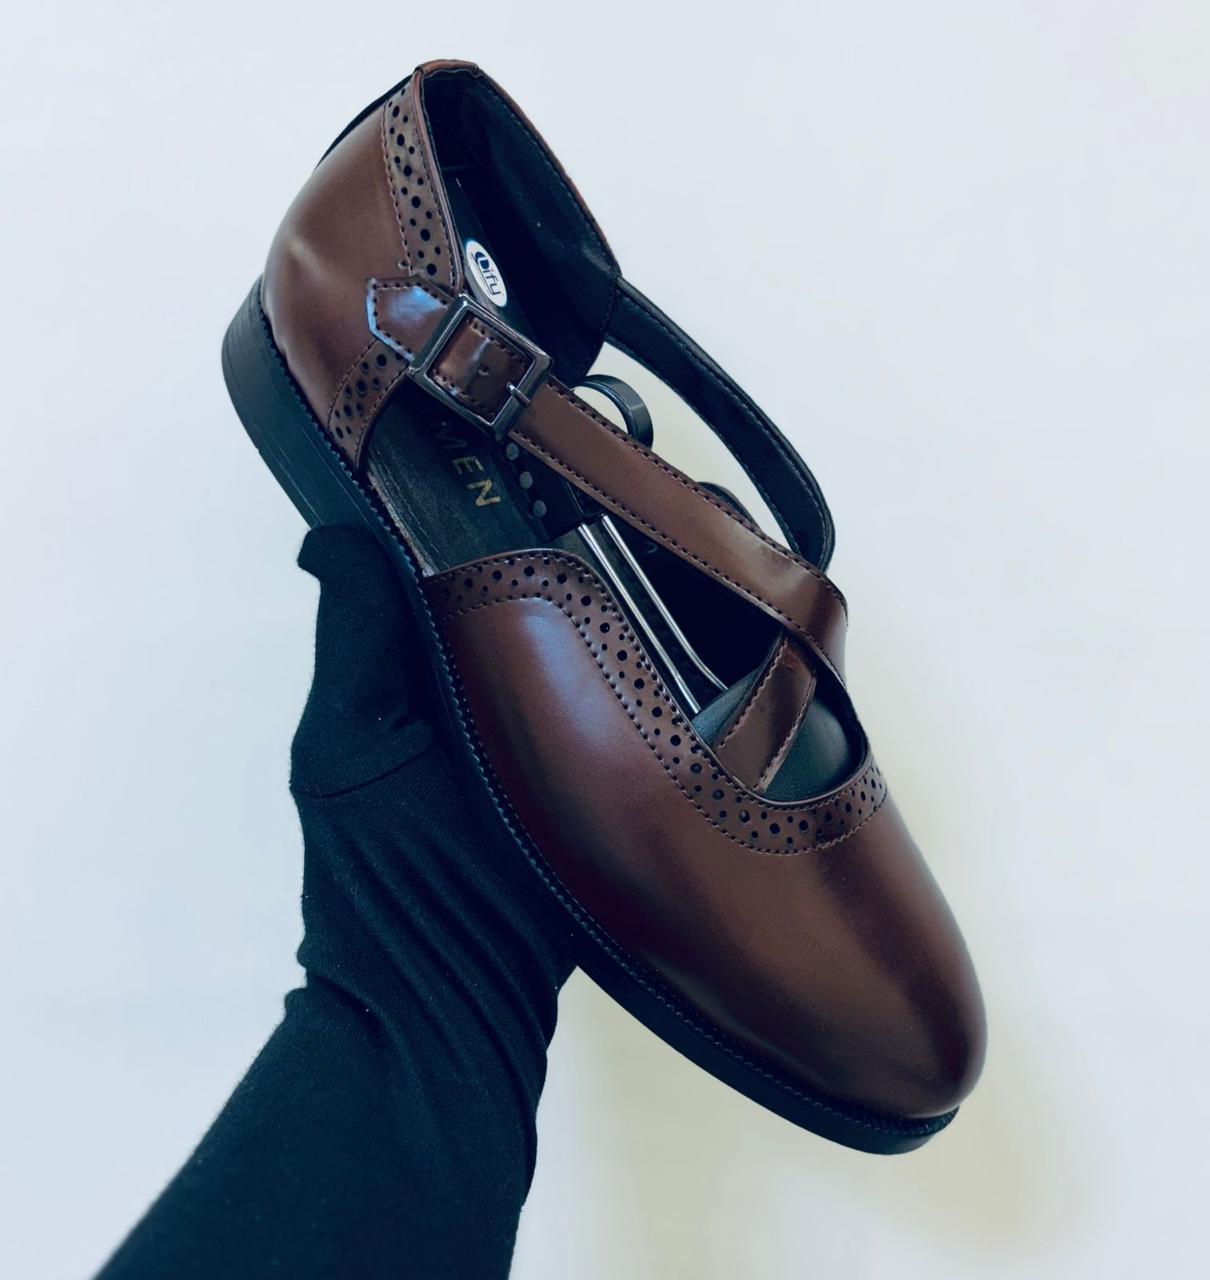 New Arrival PESHAWARI Premium Quality Sandal For Men's-Unique and Classy